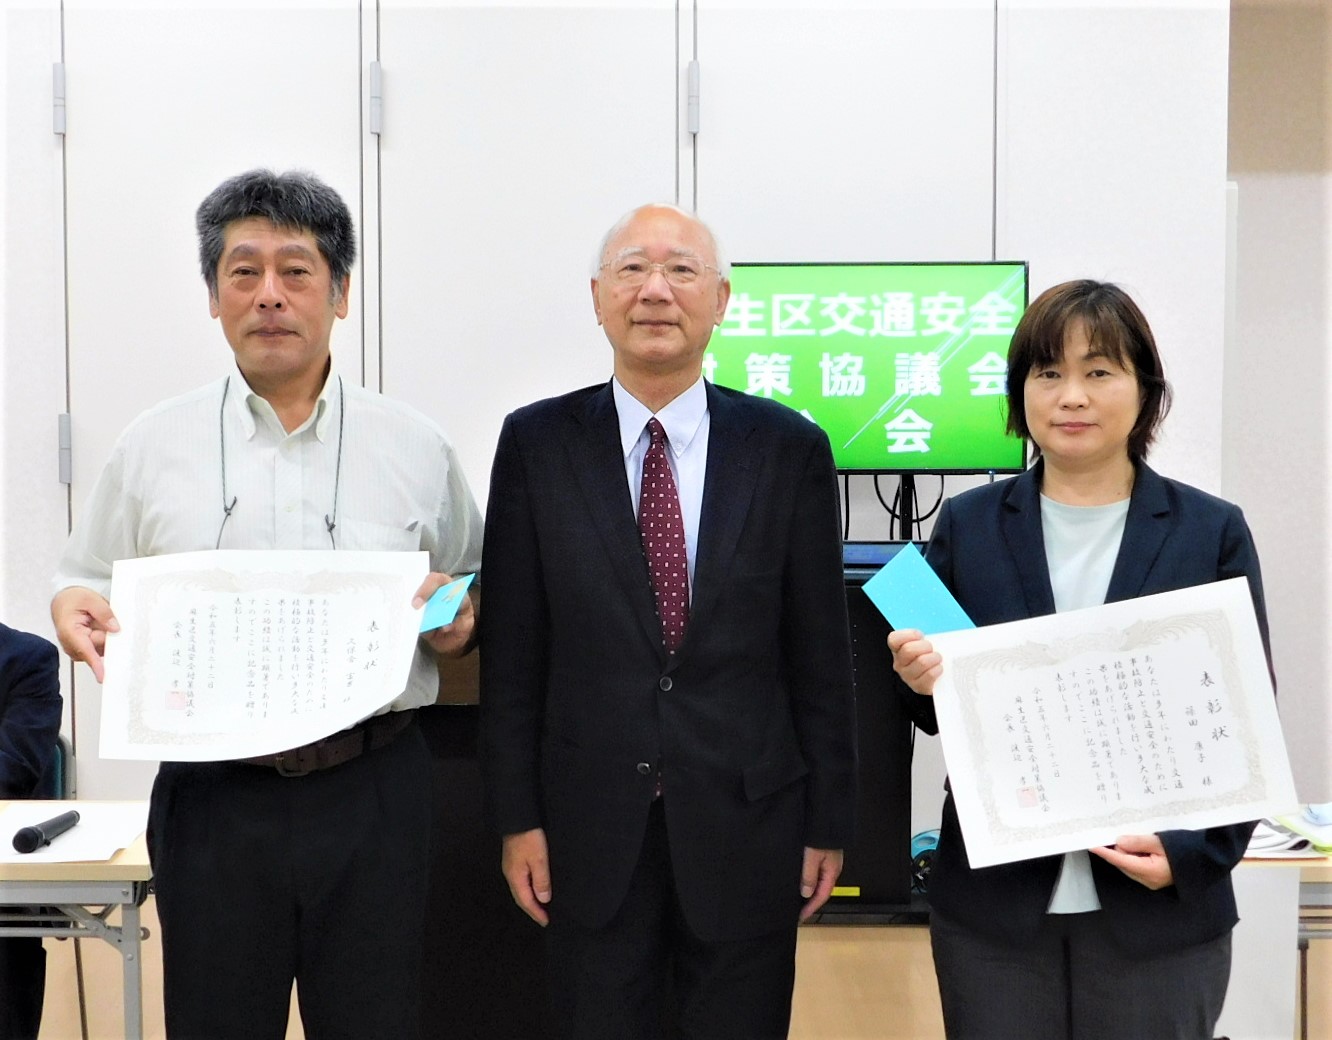 左から久保倉富男様、麻生区交通安全対策協議会渡辺会長、篠田康子様